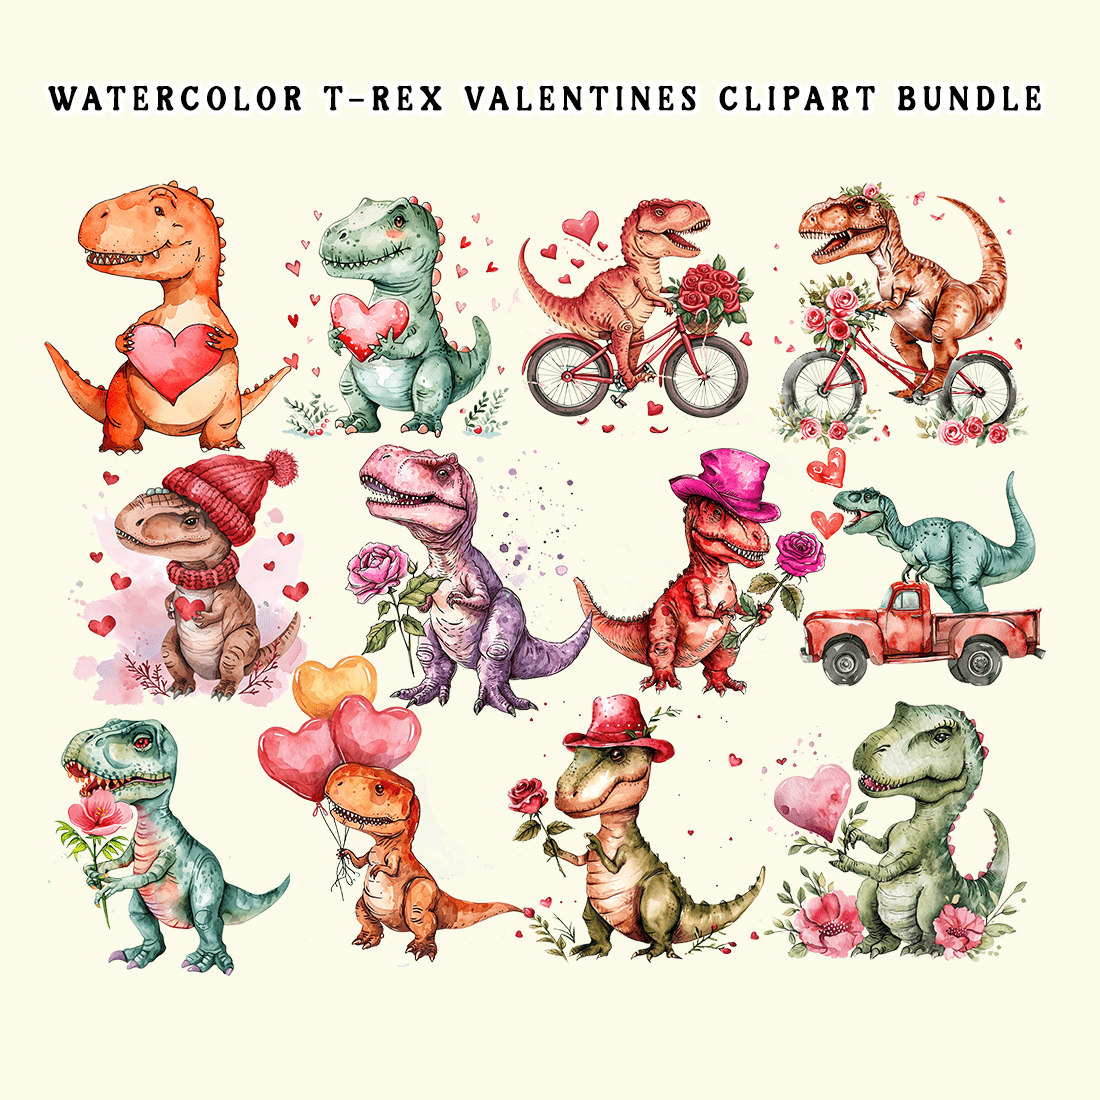 Watercolor T-Rex Valentines Clipart Bundle preview image.